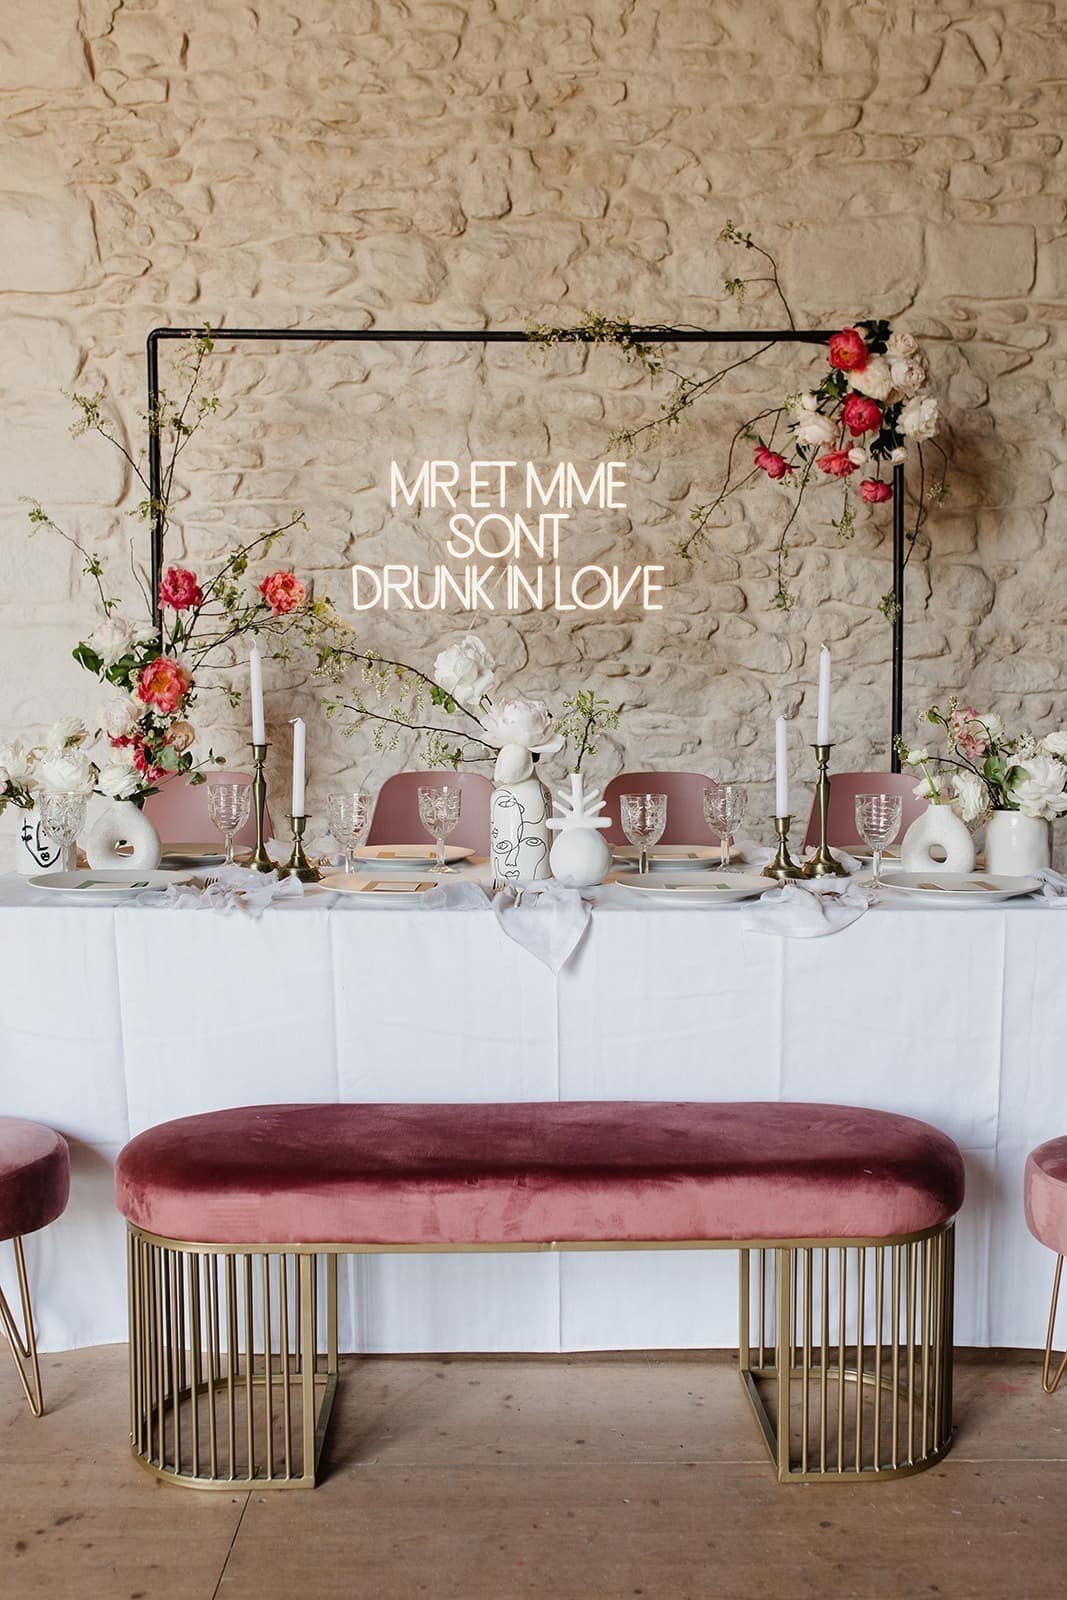 décoration de mariage. table d'honneur des mariés blanche et rose dans une inspiration Art déco